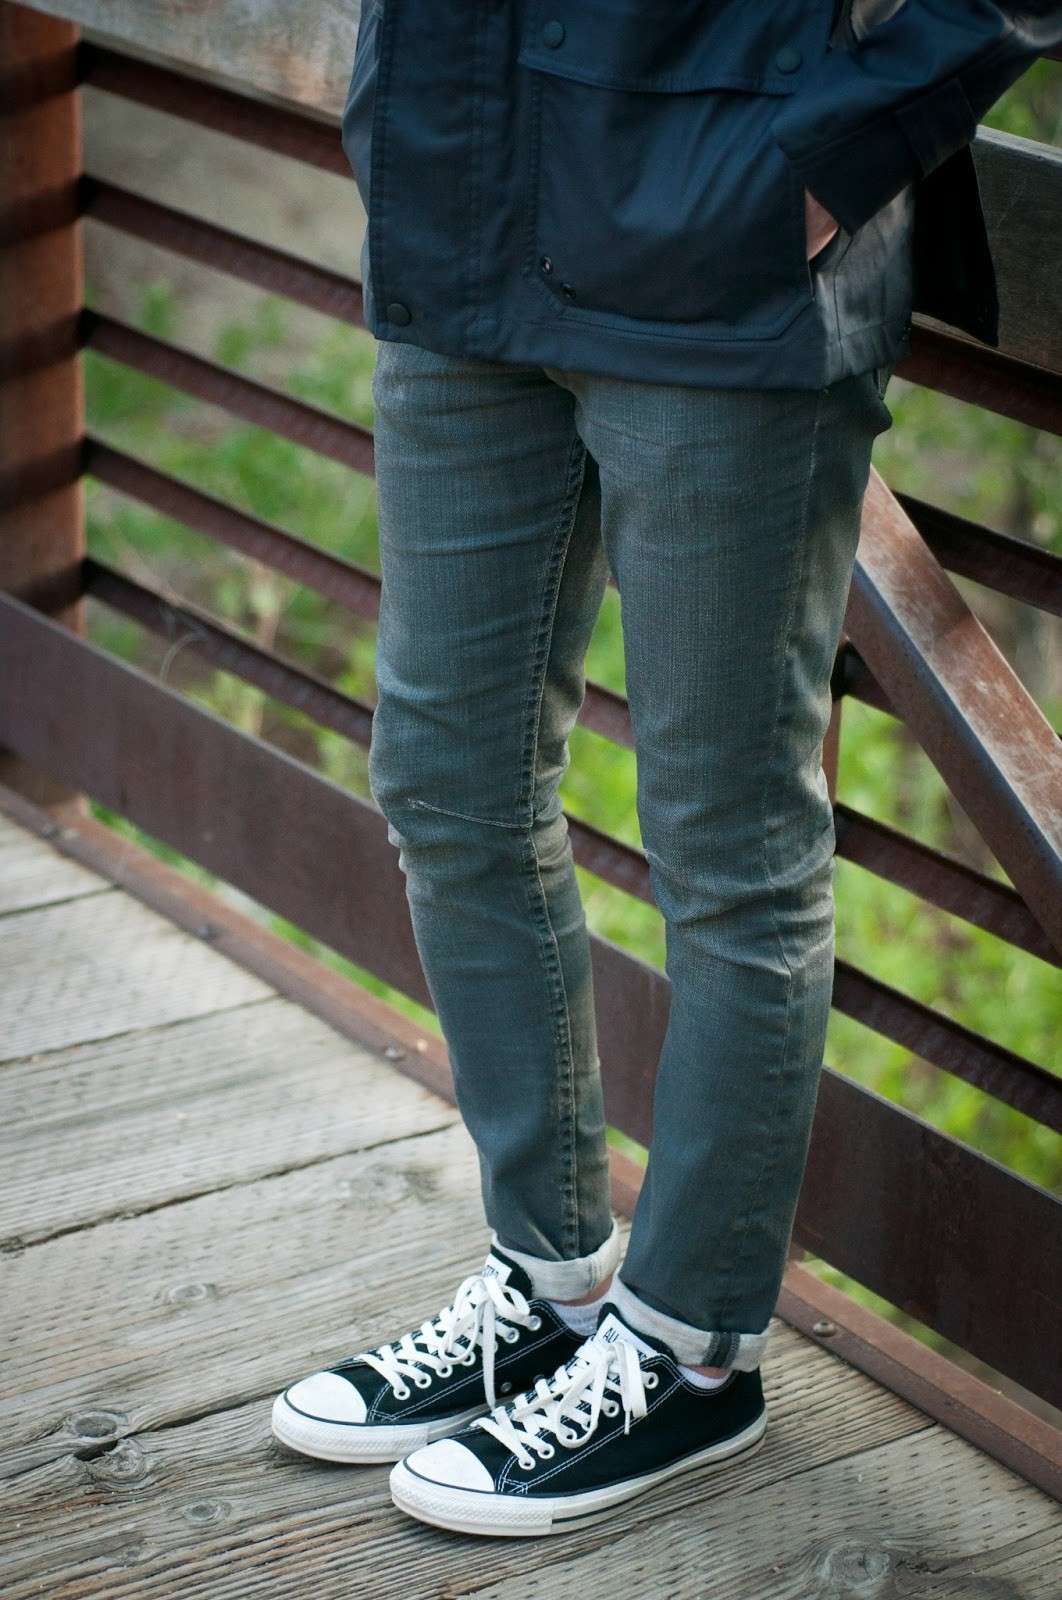 jeans con risvolto e converse - 55% di sconto - agriz.it